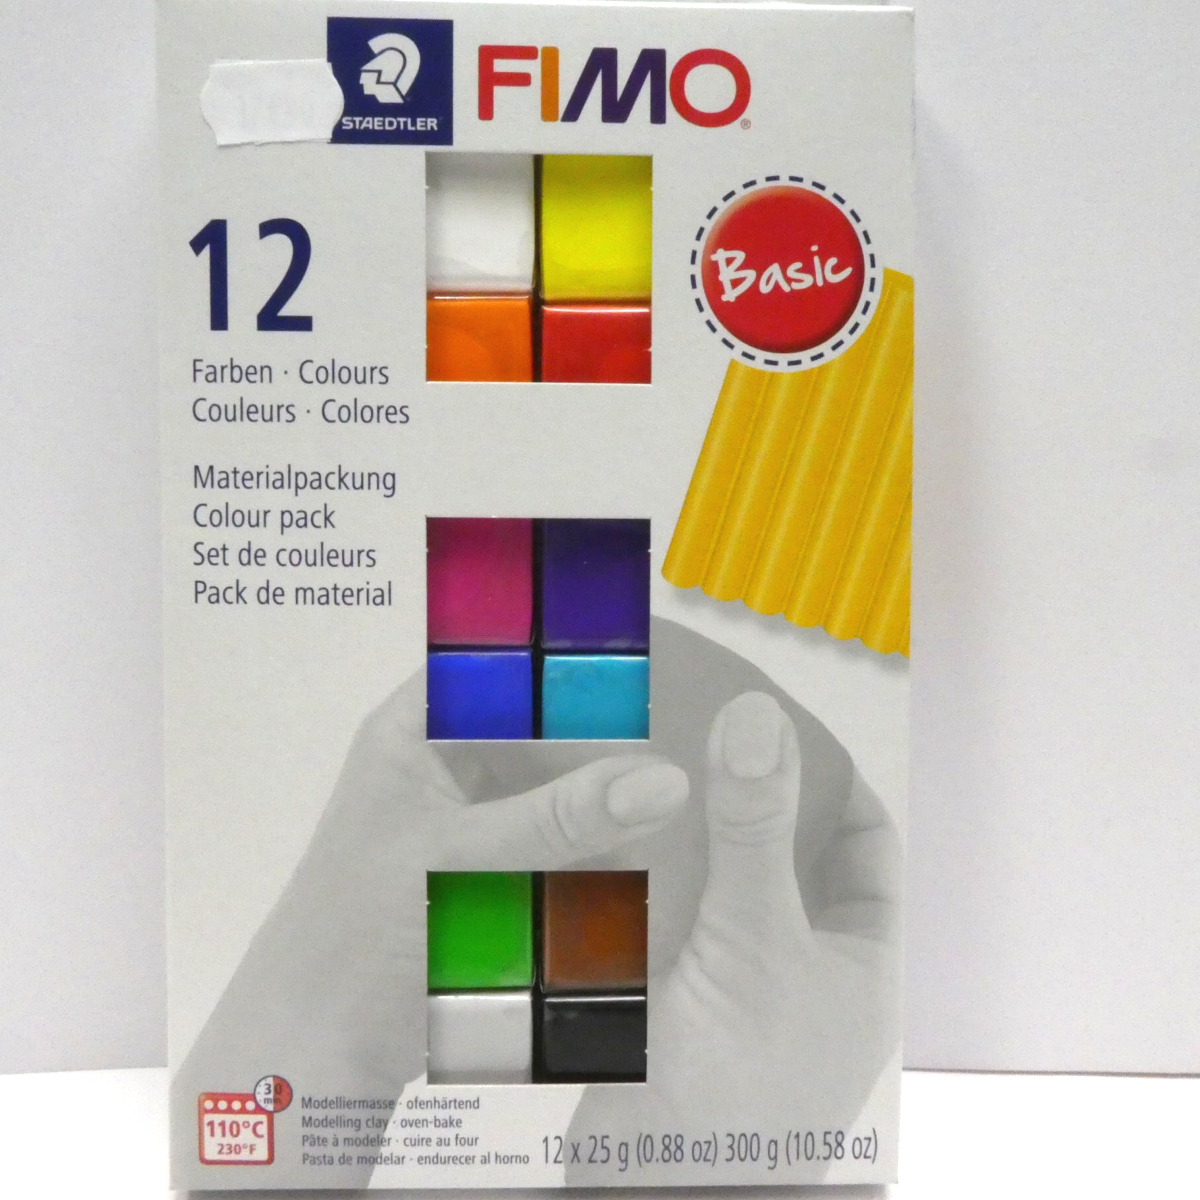 Lot de Pâte FIMO x 12 Coloris